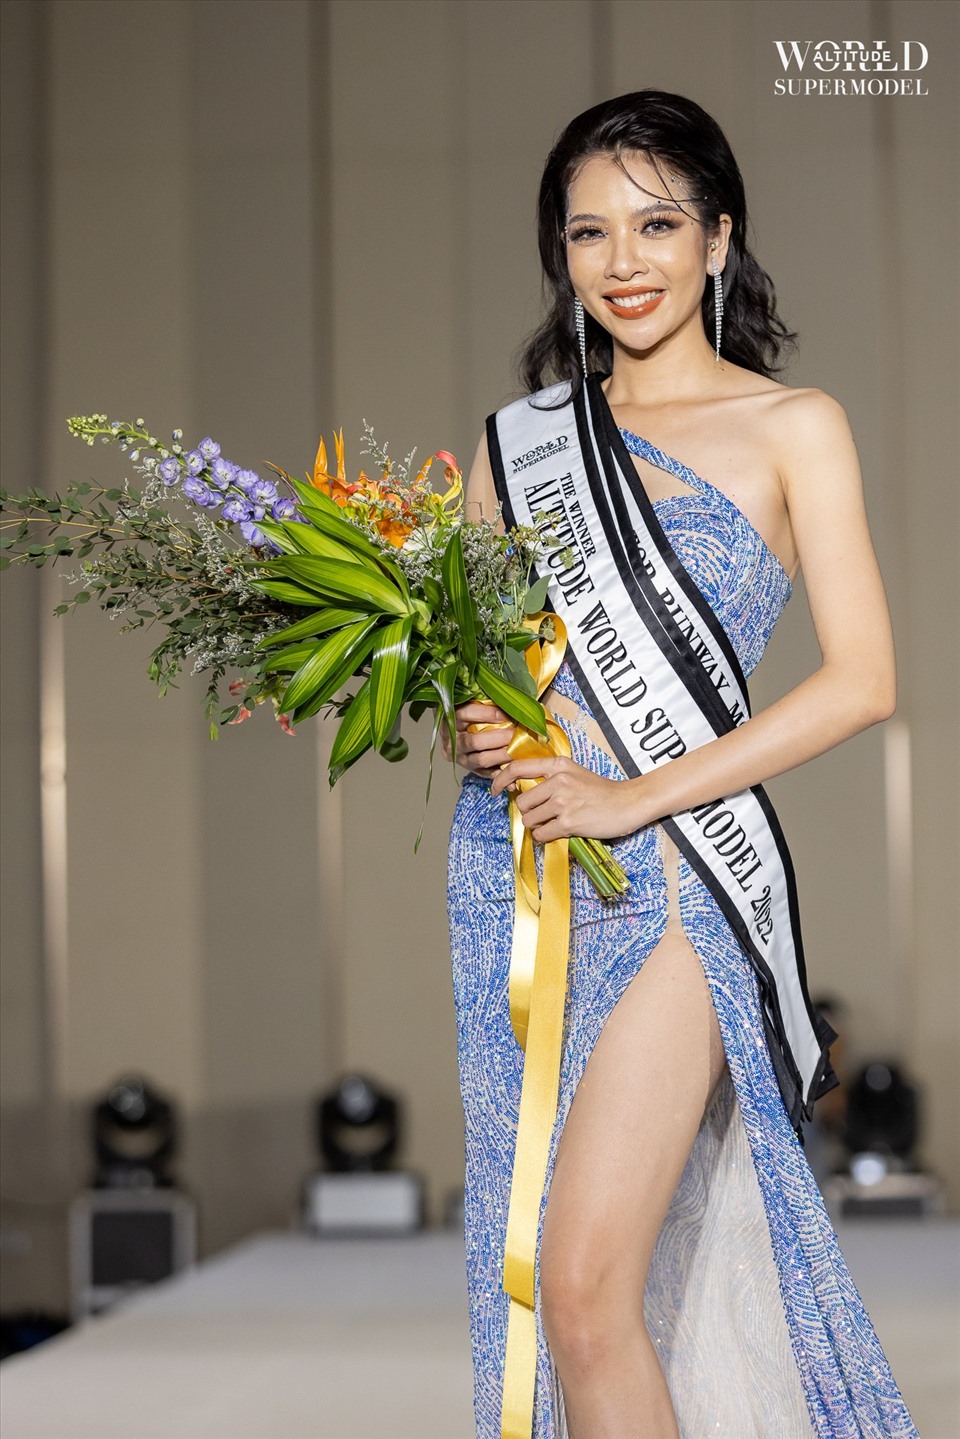 Trước đó Thùy Dung từng góp mặt trong các cuộc thi nhan sắc trong nước như: Elite Model Look Vietnam 2014 lọt Top 24, Vietnam’s Next Top Model, Hoa hậu Hoàn Vũ… Ảnh: NSCC.